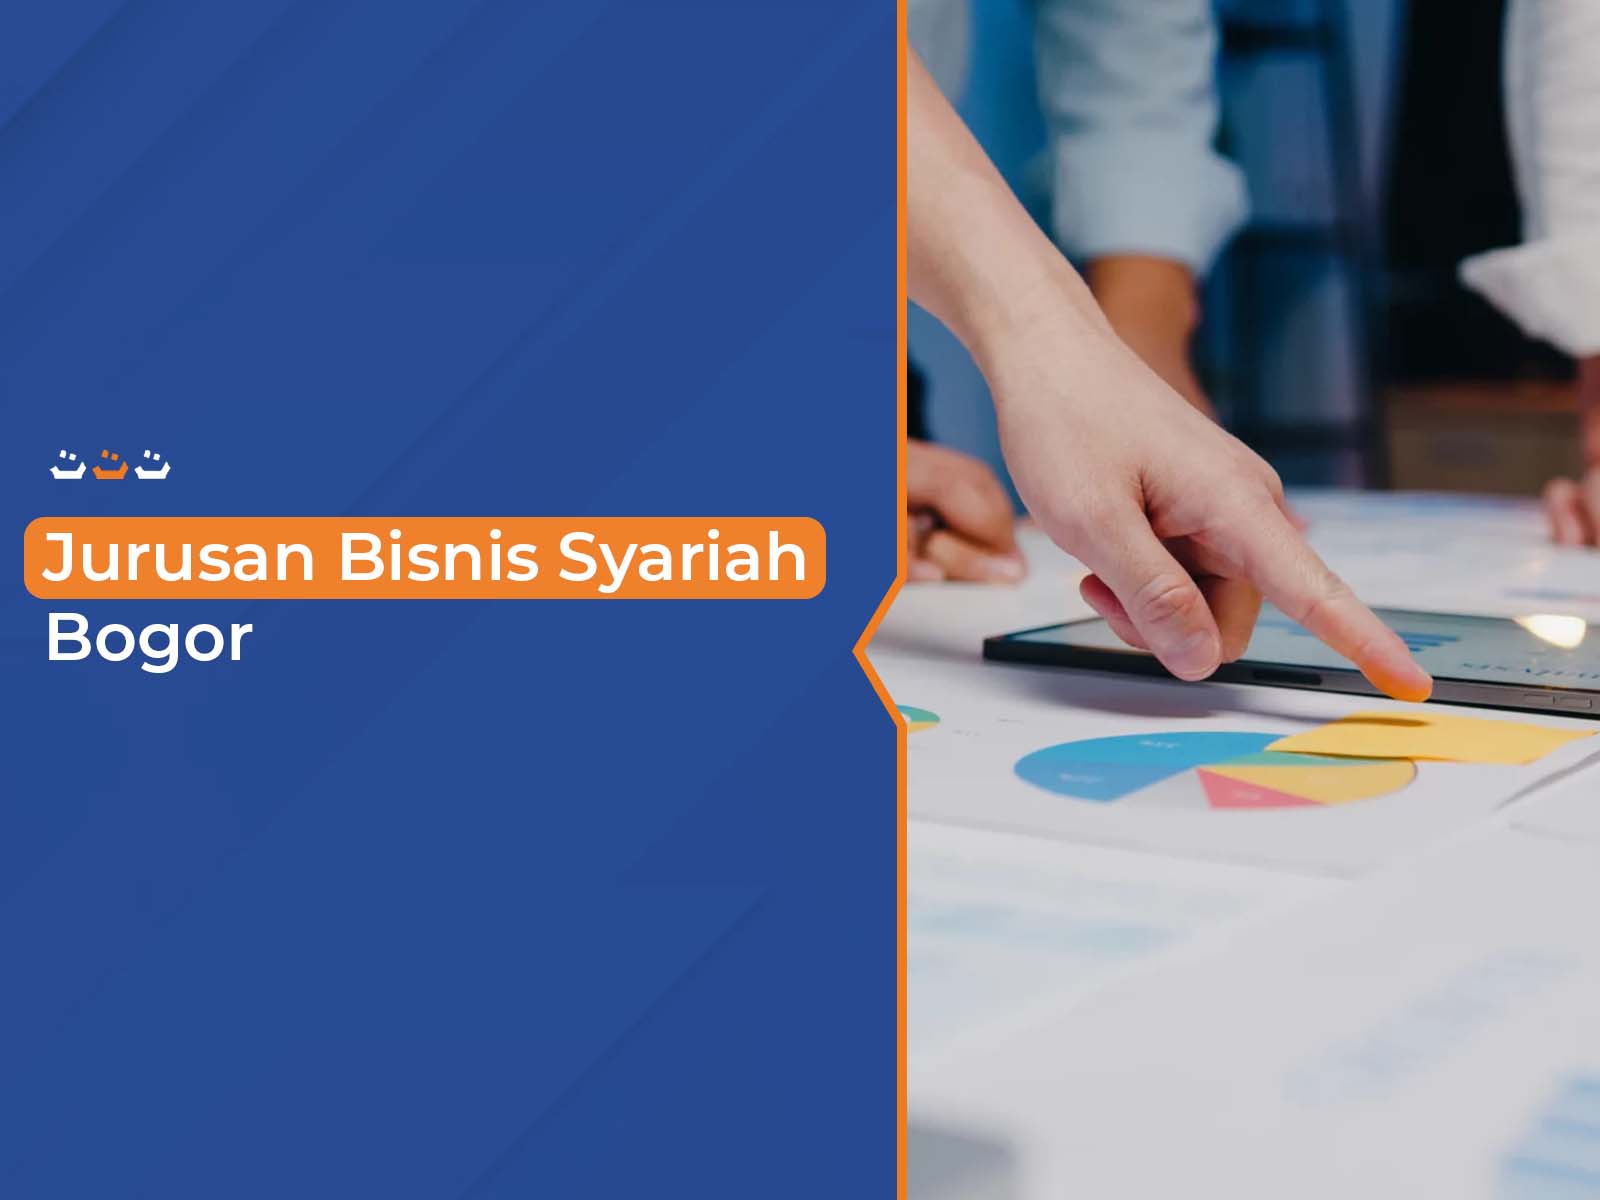 Jurusan Bisnis Syariah Bogor